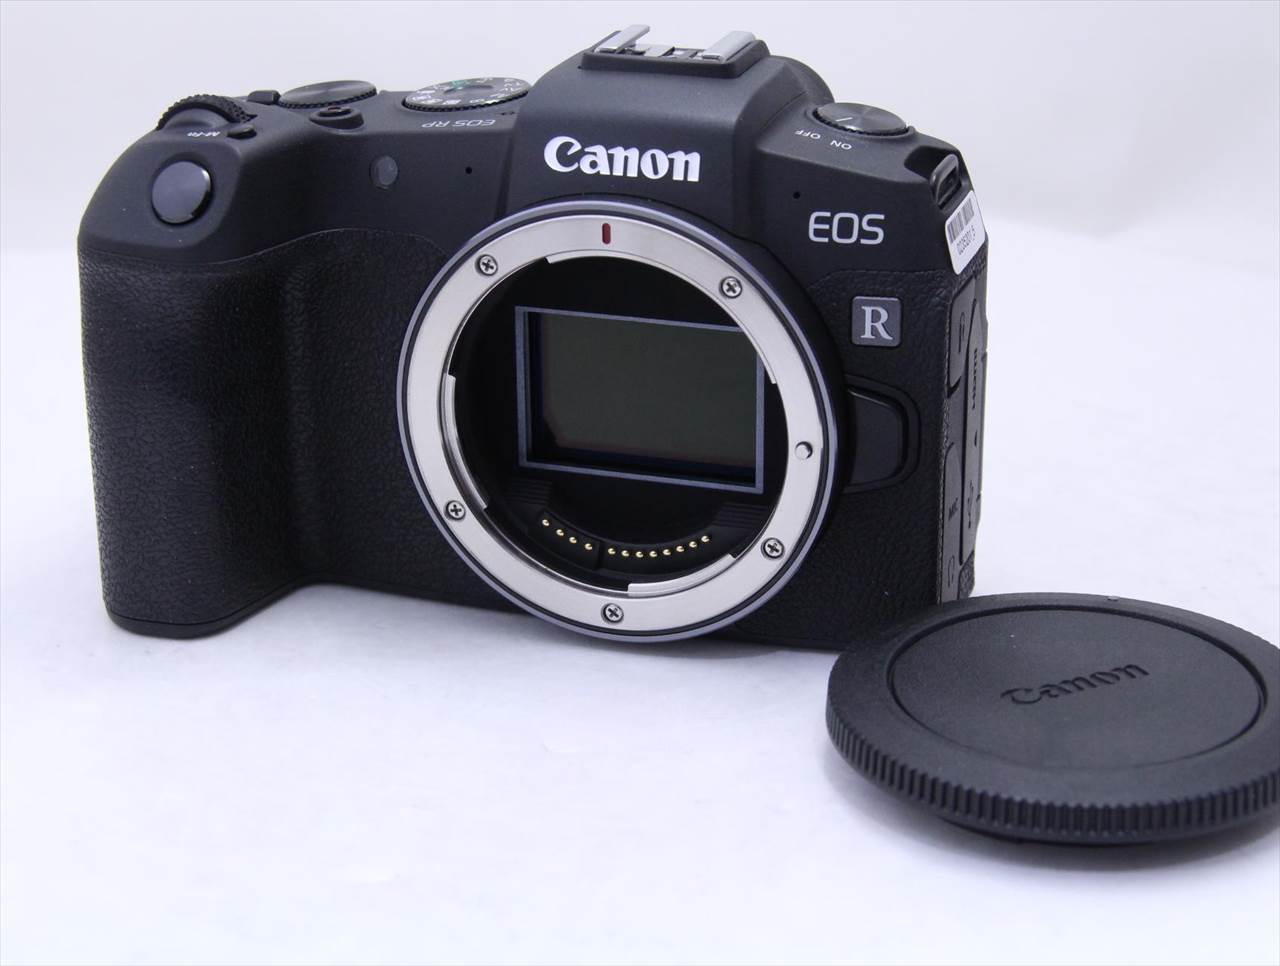 Canon キャノン EOS RP ボディ(ジャンク) - デジタルカメラ